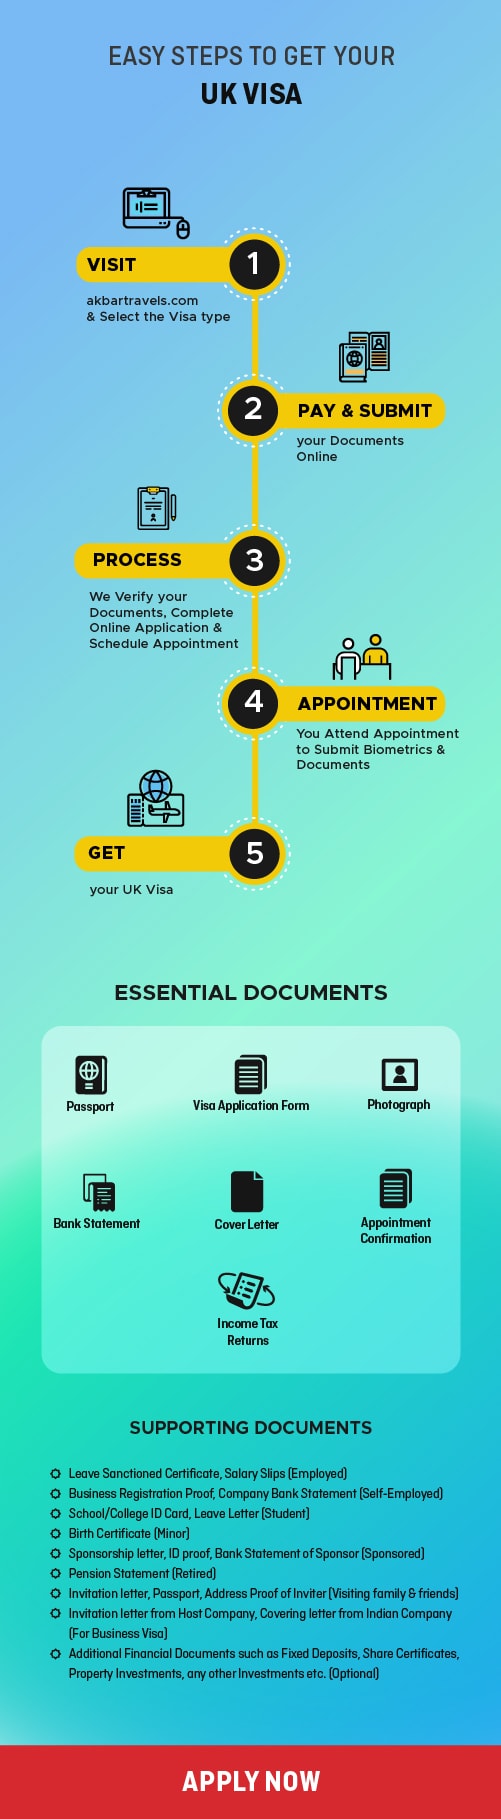 UK Visa process and requirements